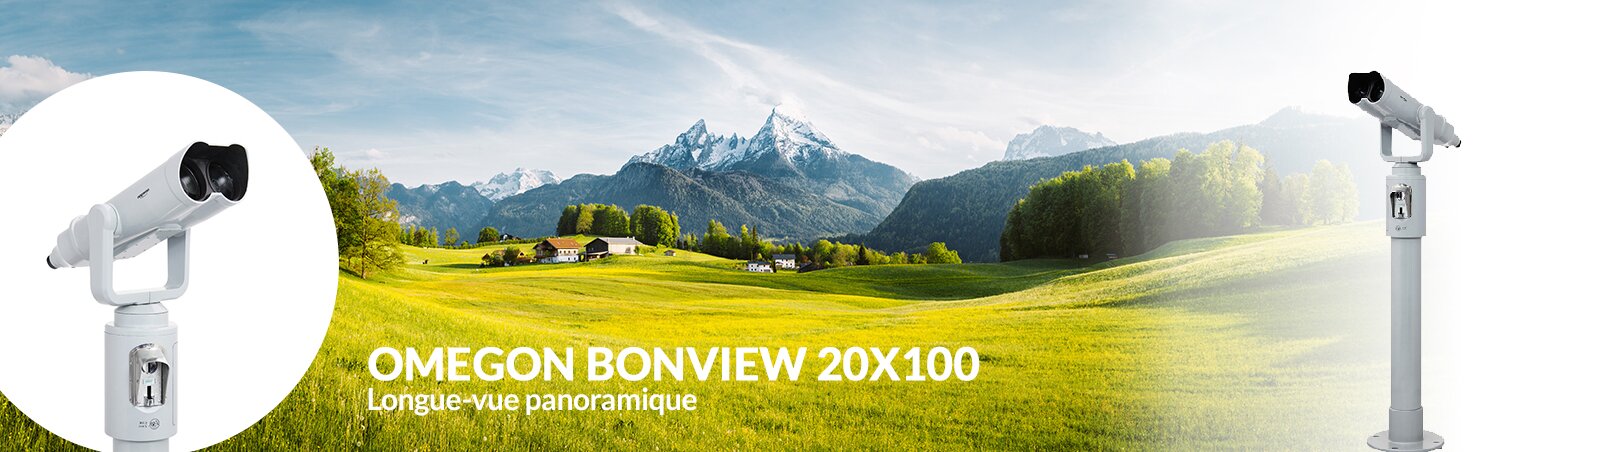 Nouvelle longue-vue panoramique Omegon Bonview 20x100 optique sergent